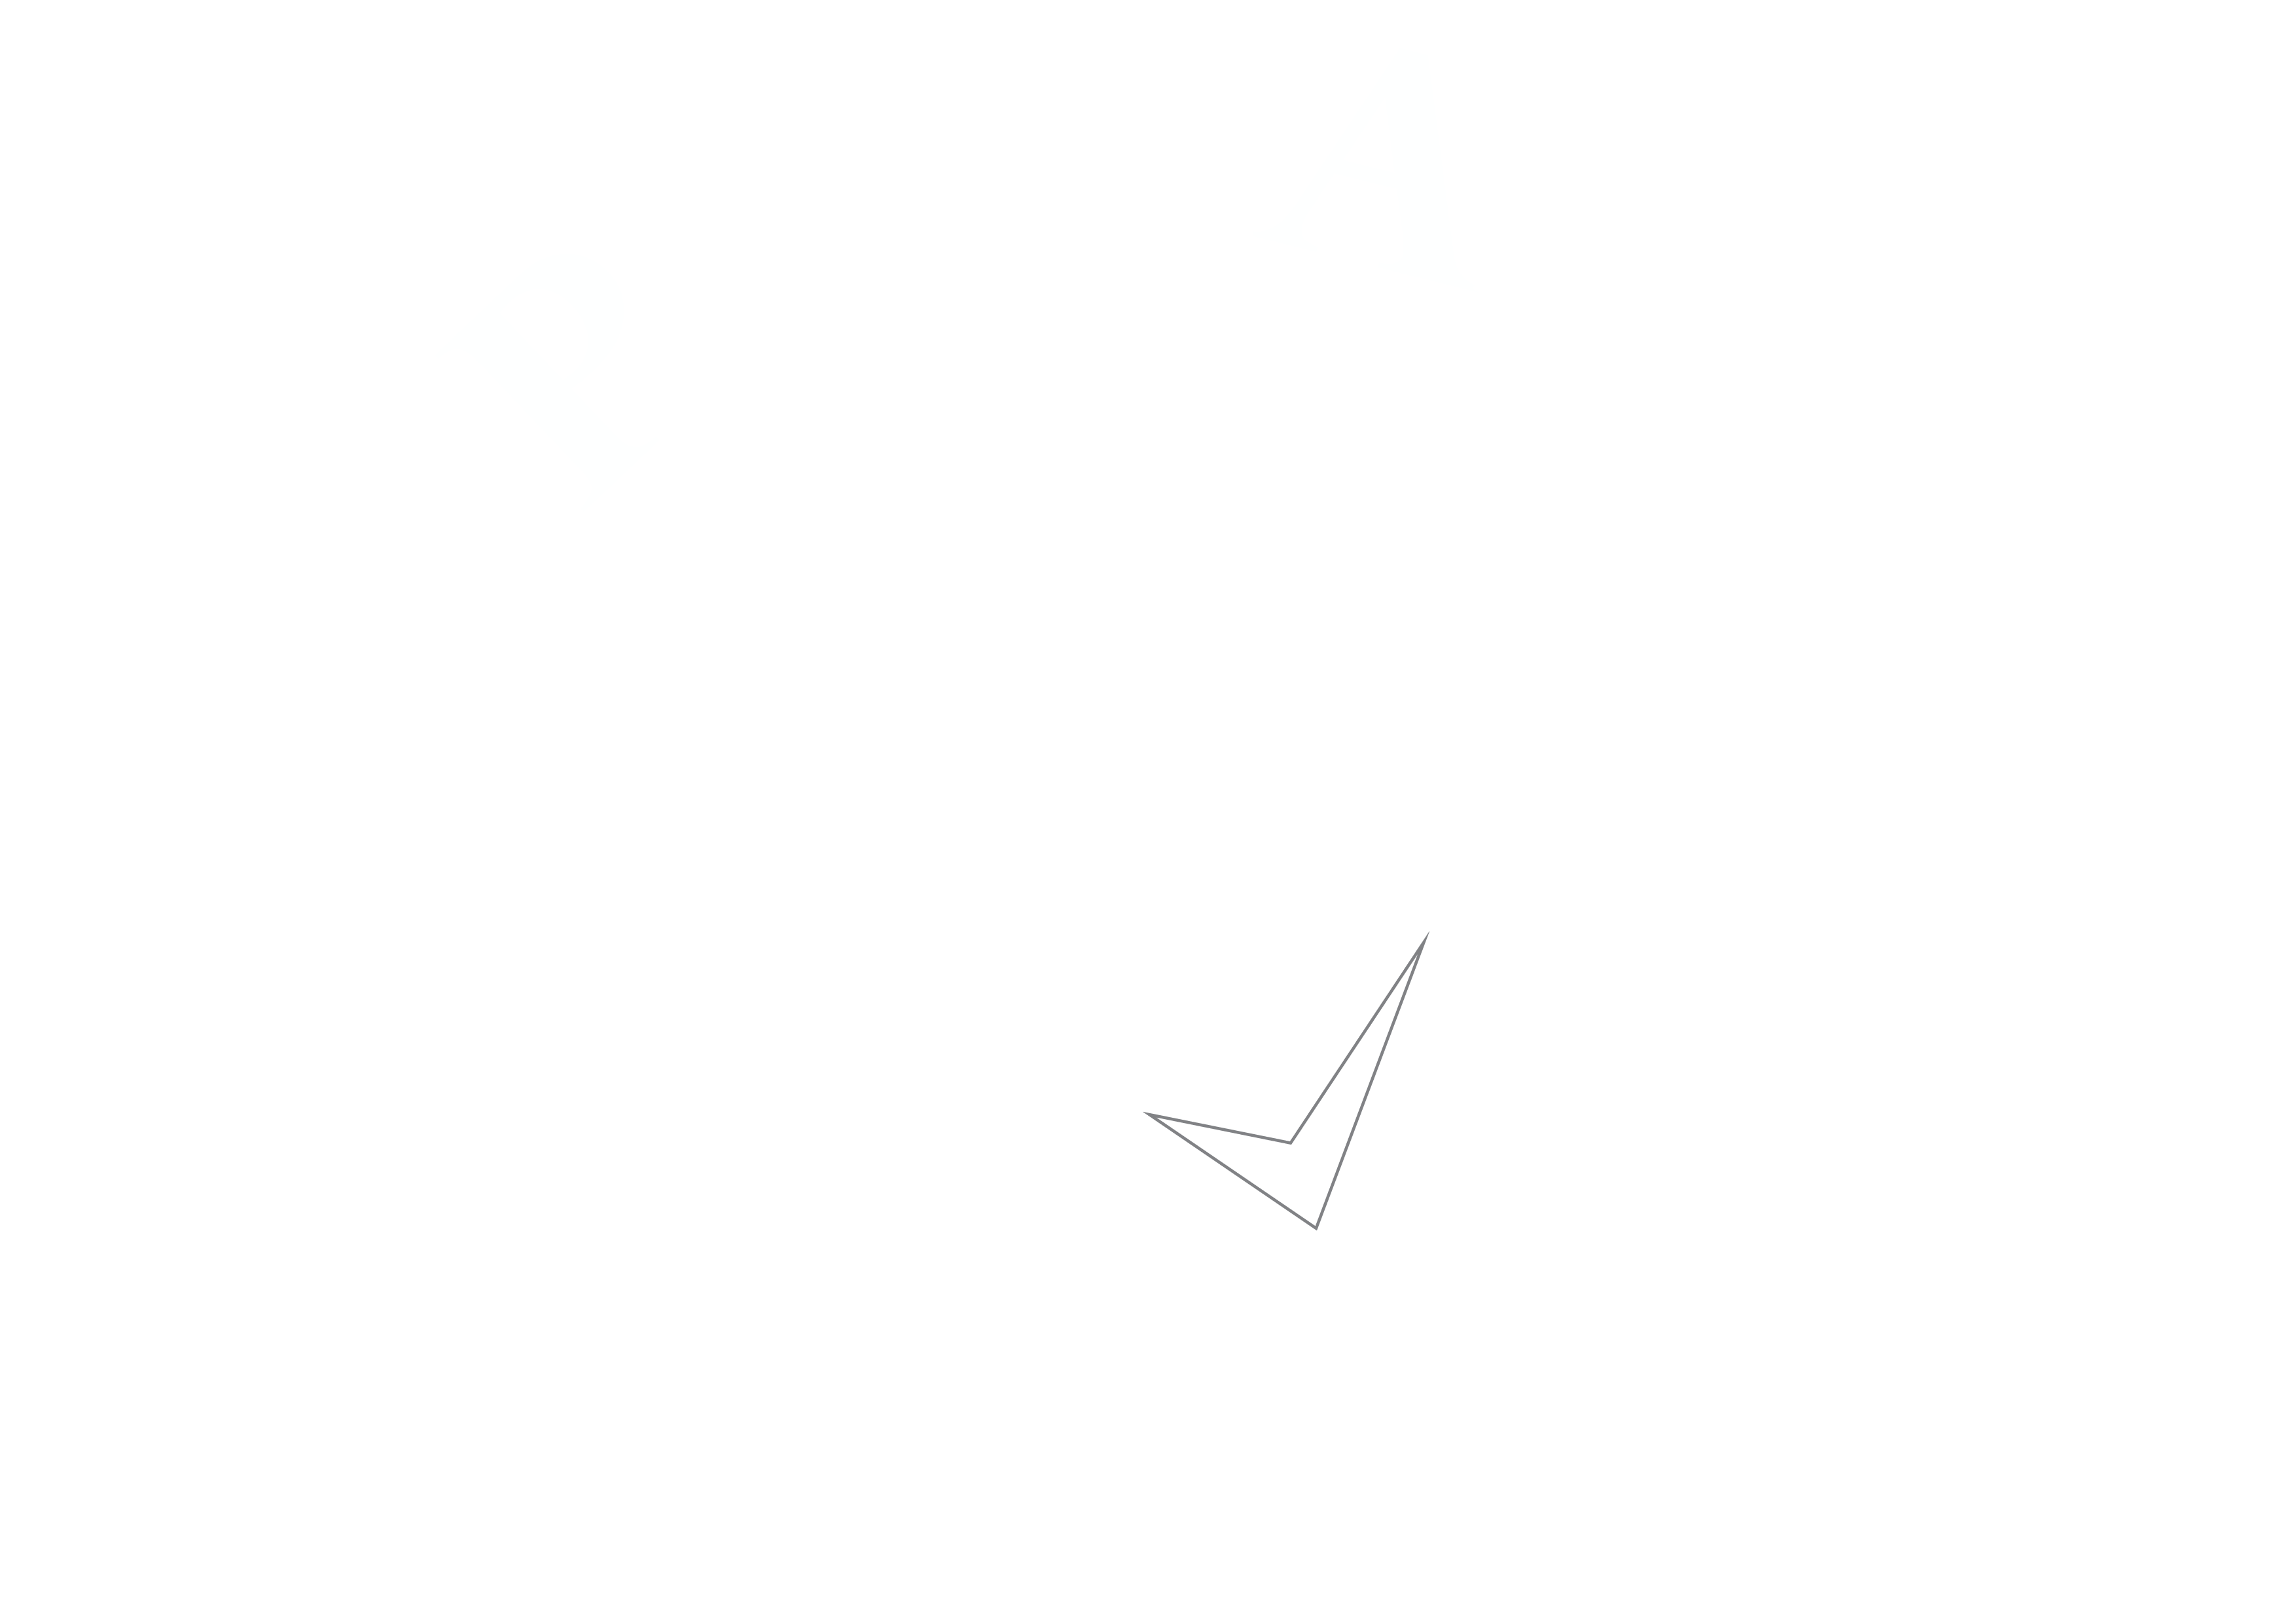 bank indonesia